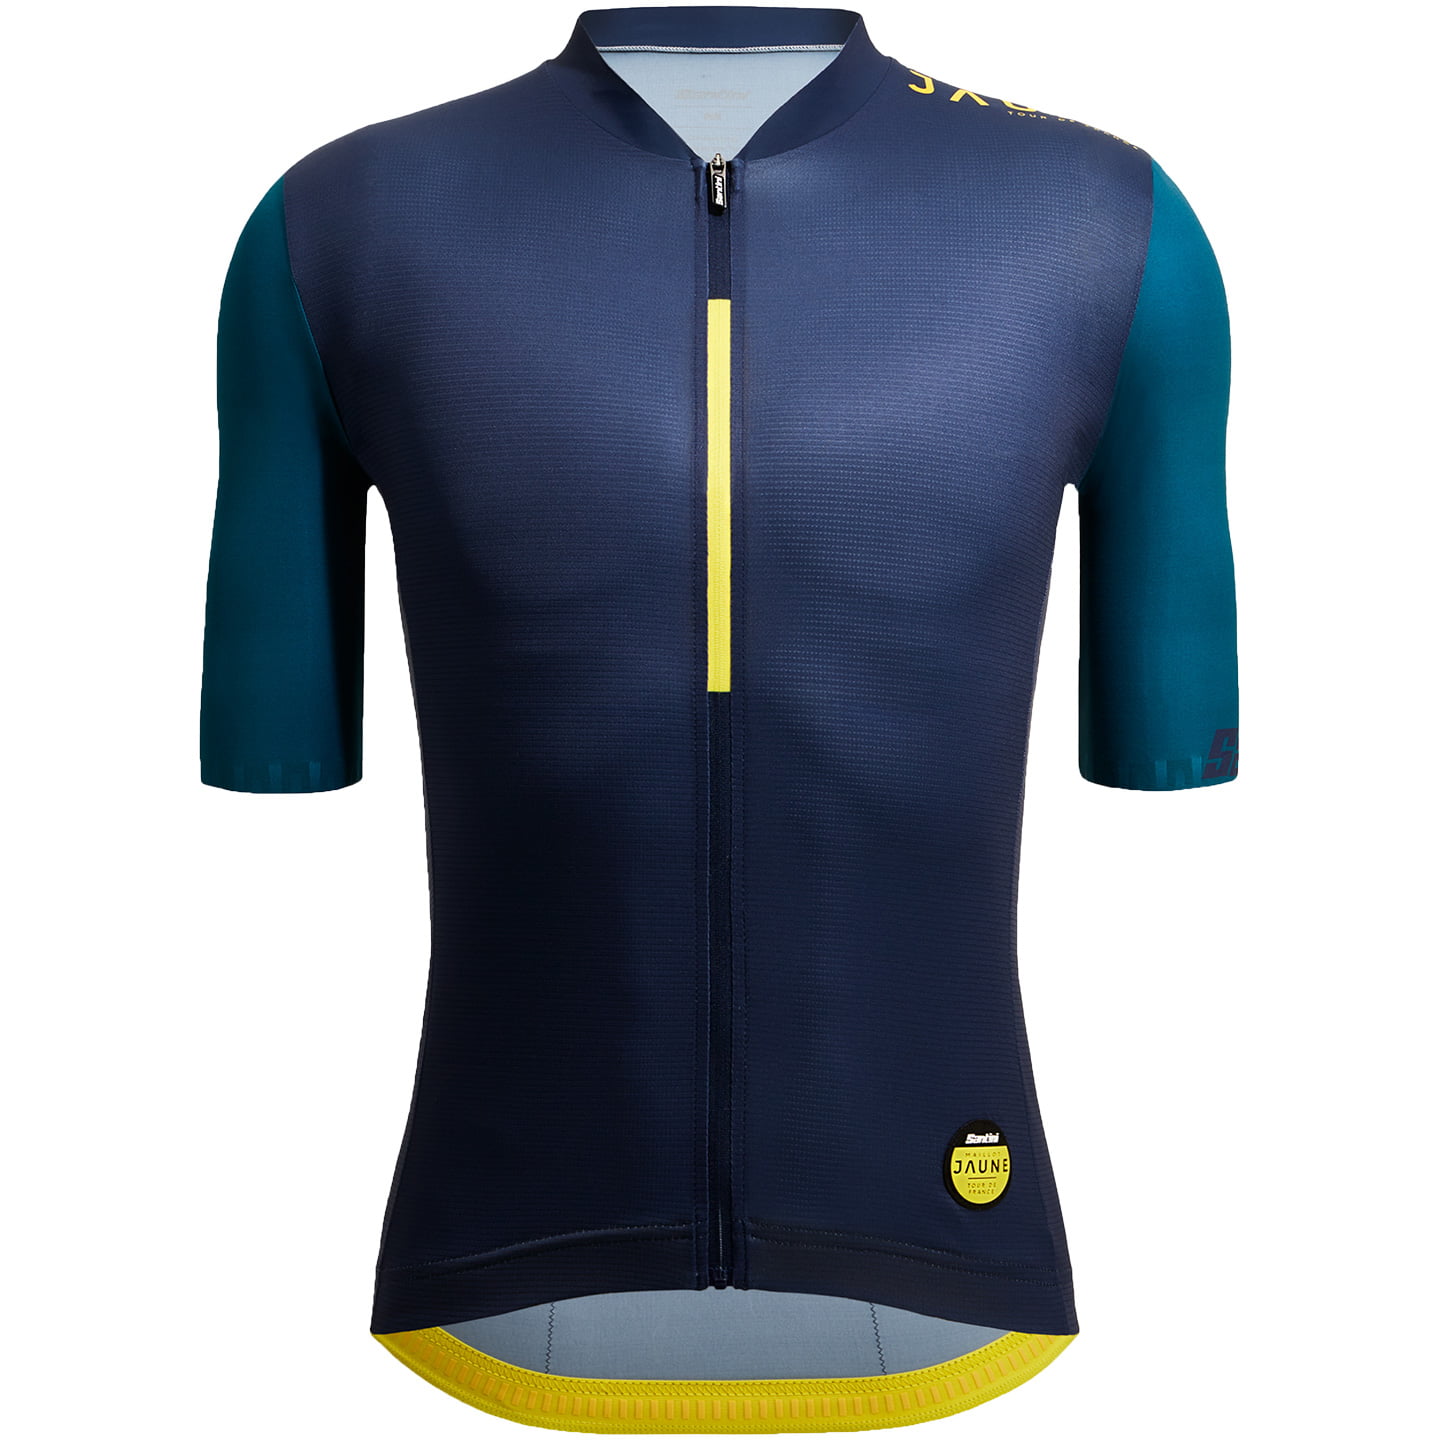 TOUR DE FRANCE Le Maillot Jaune Allez 2023 Short Sleeve Jersey, for men, size 2XL, Cycle shirt, Bike gear